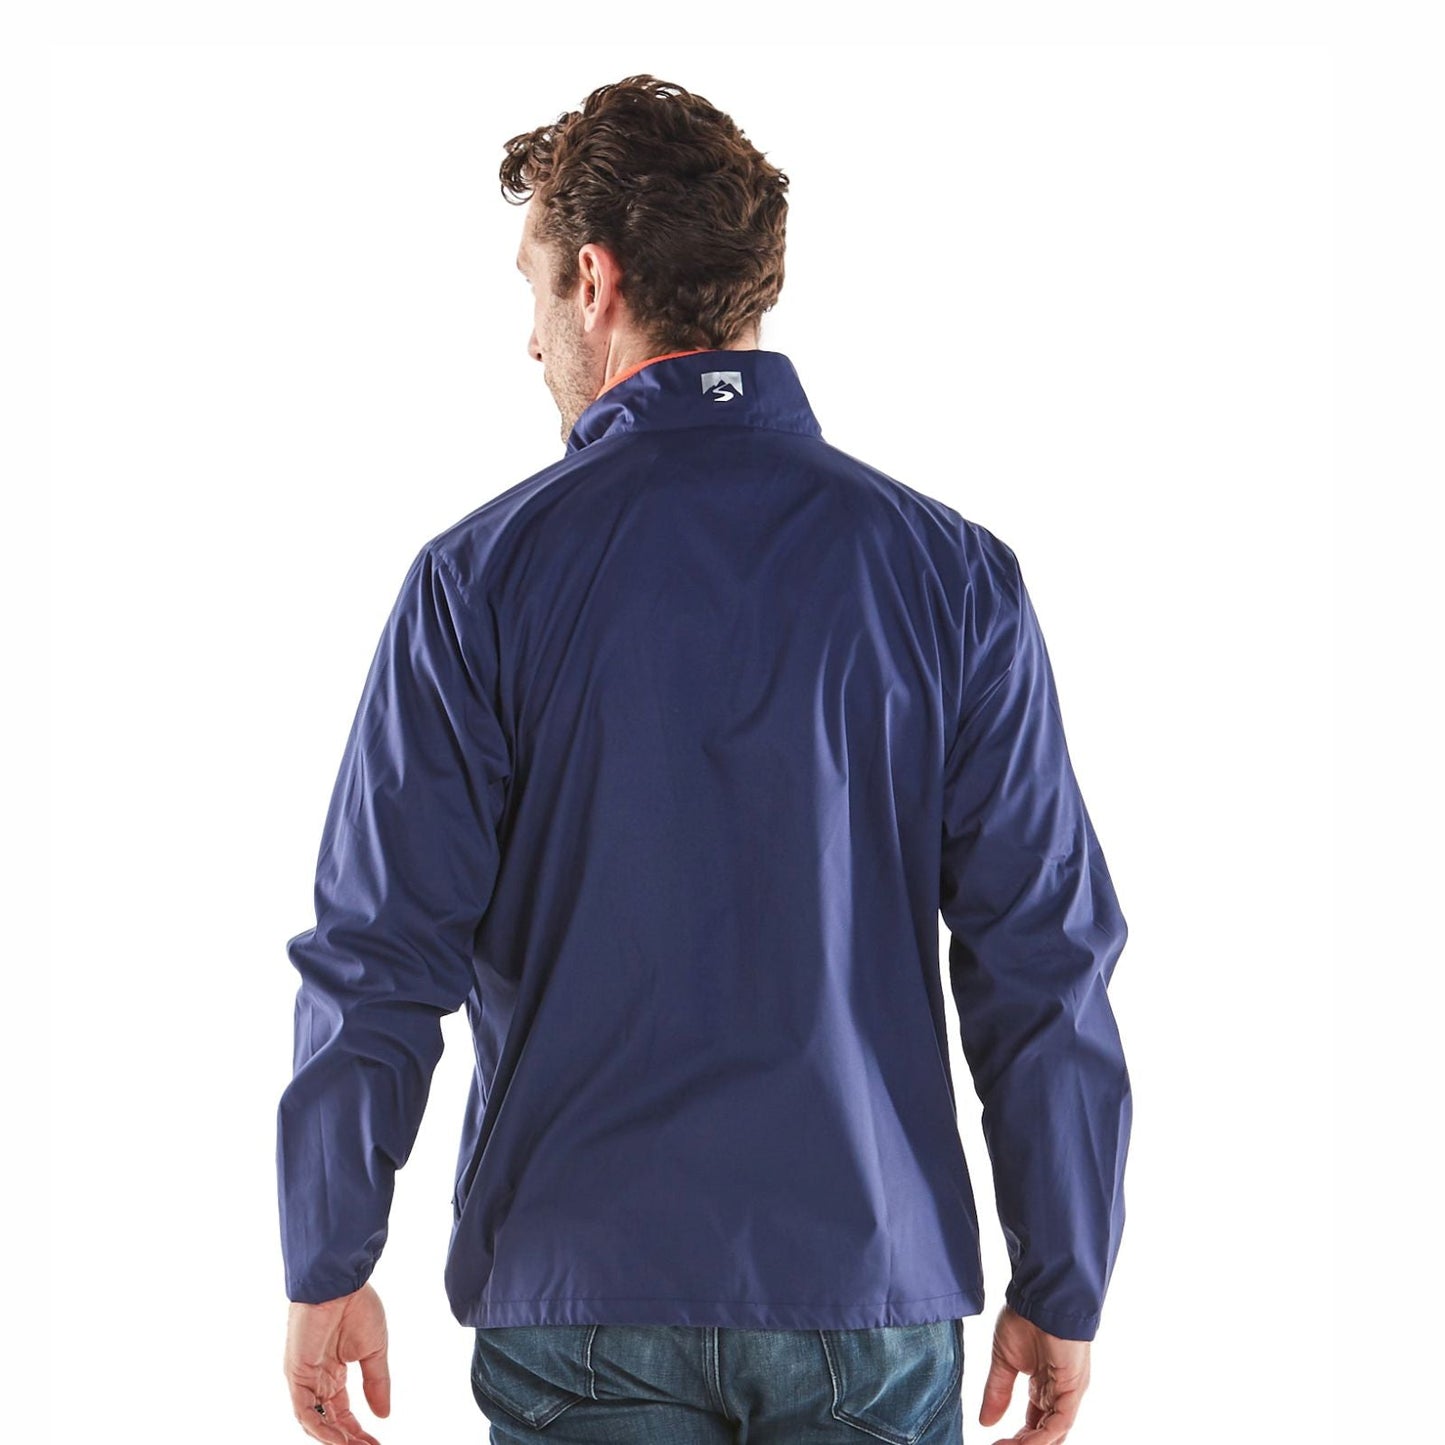 MBH Men's Lightweight Zip Eco Jacket -Navy- Embroidery